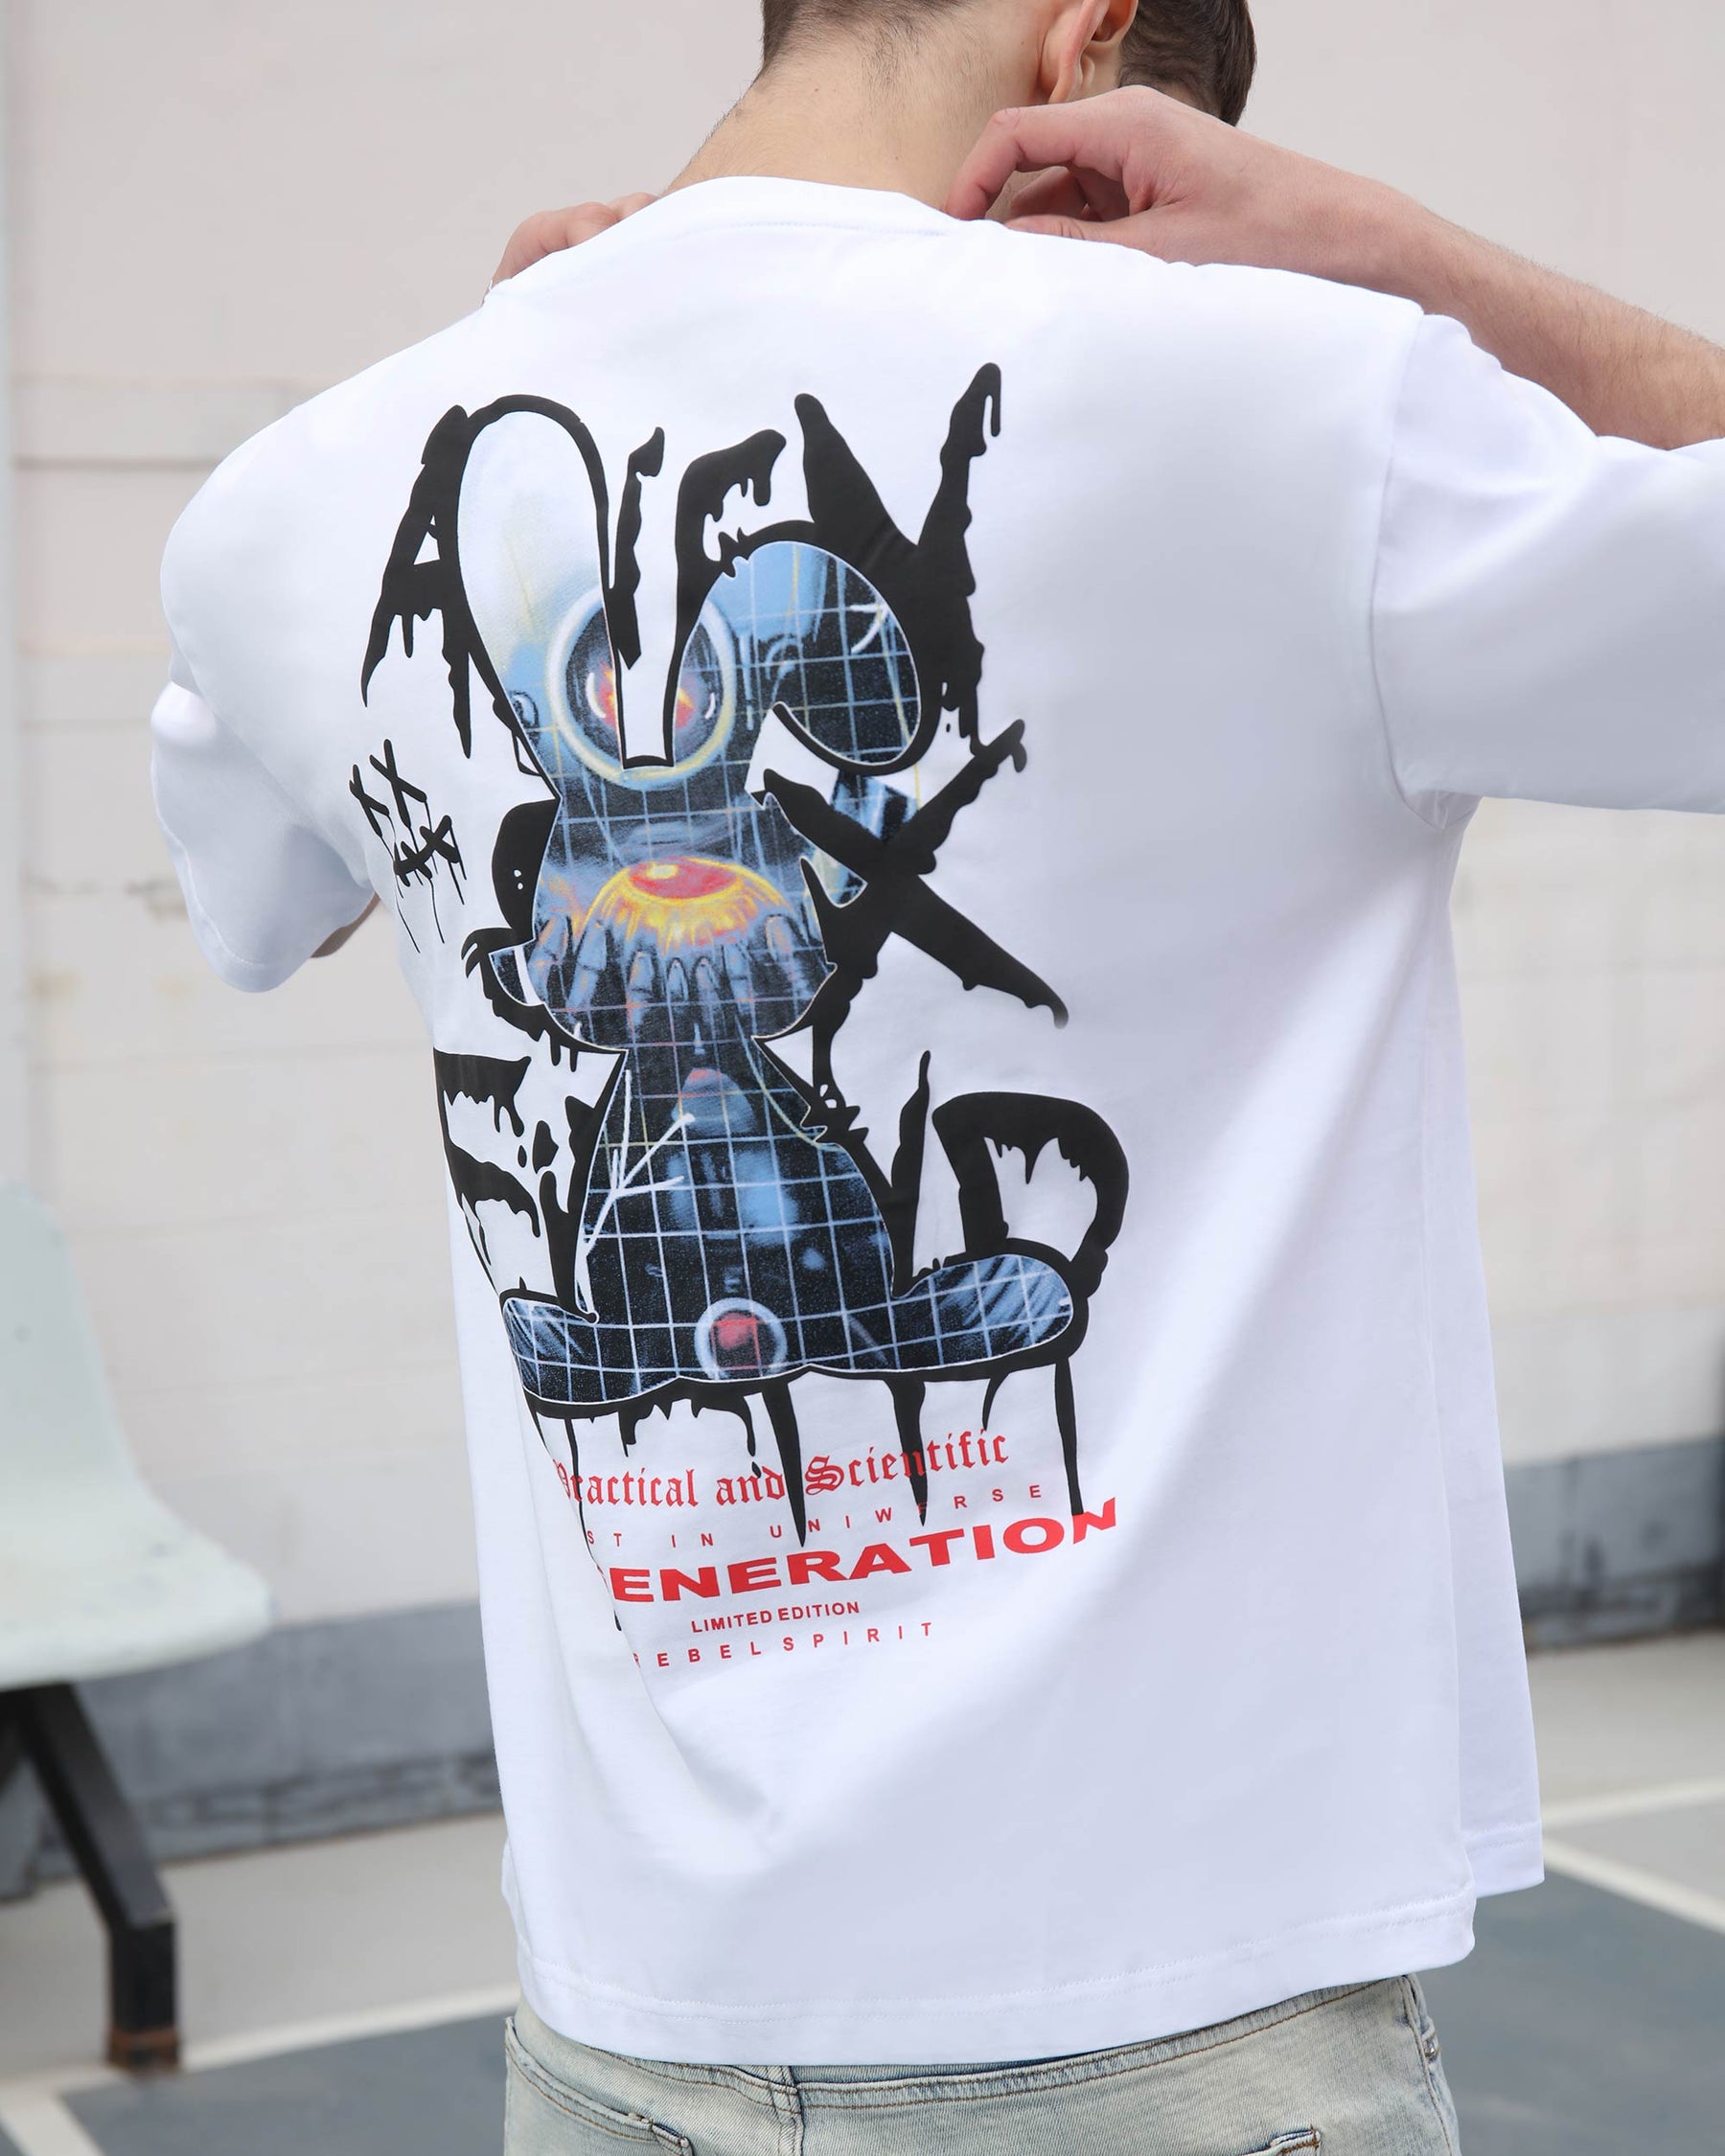 Camiseta con diseño de conejito de uso informal 